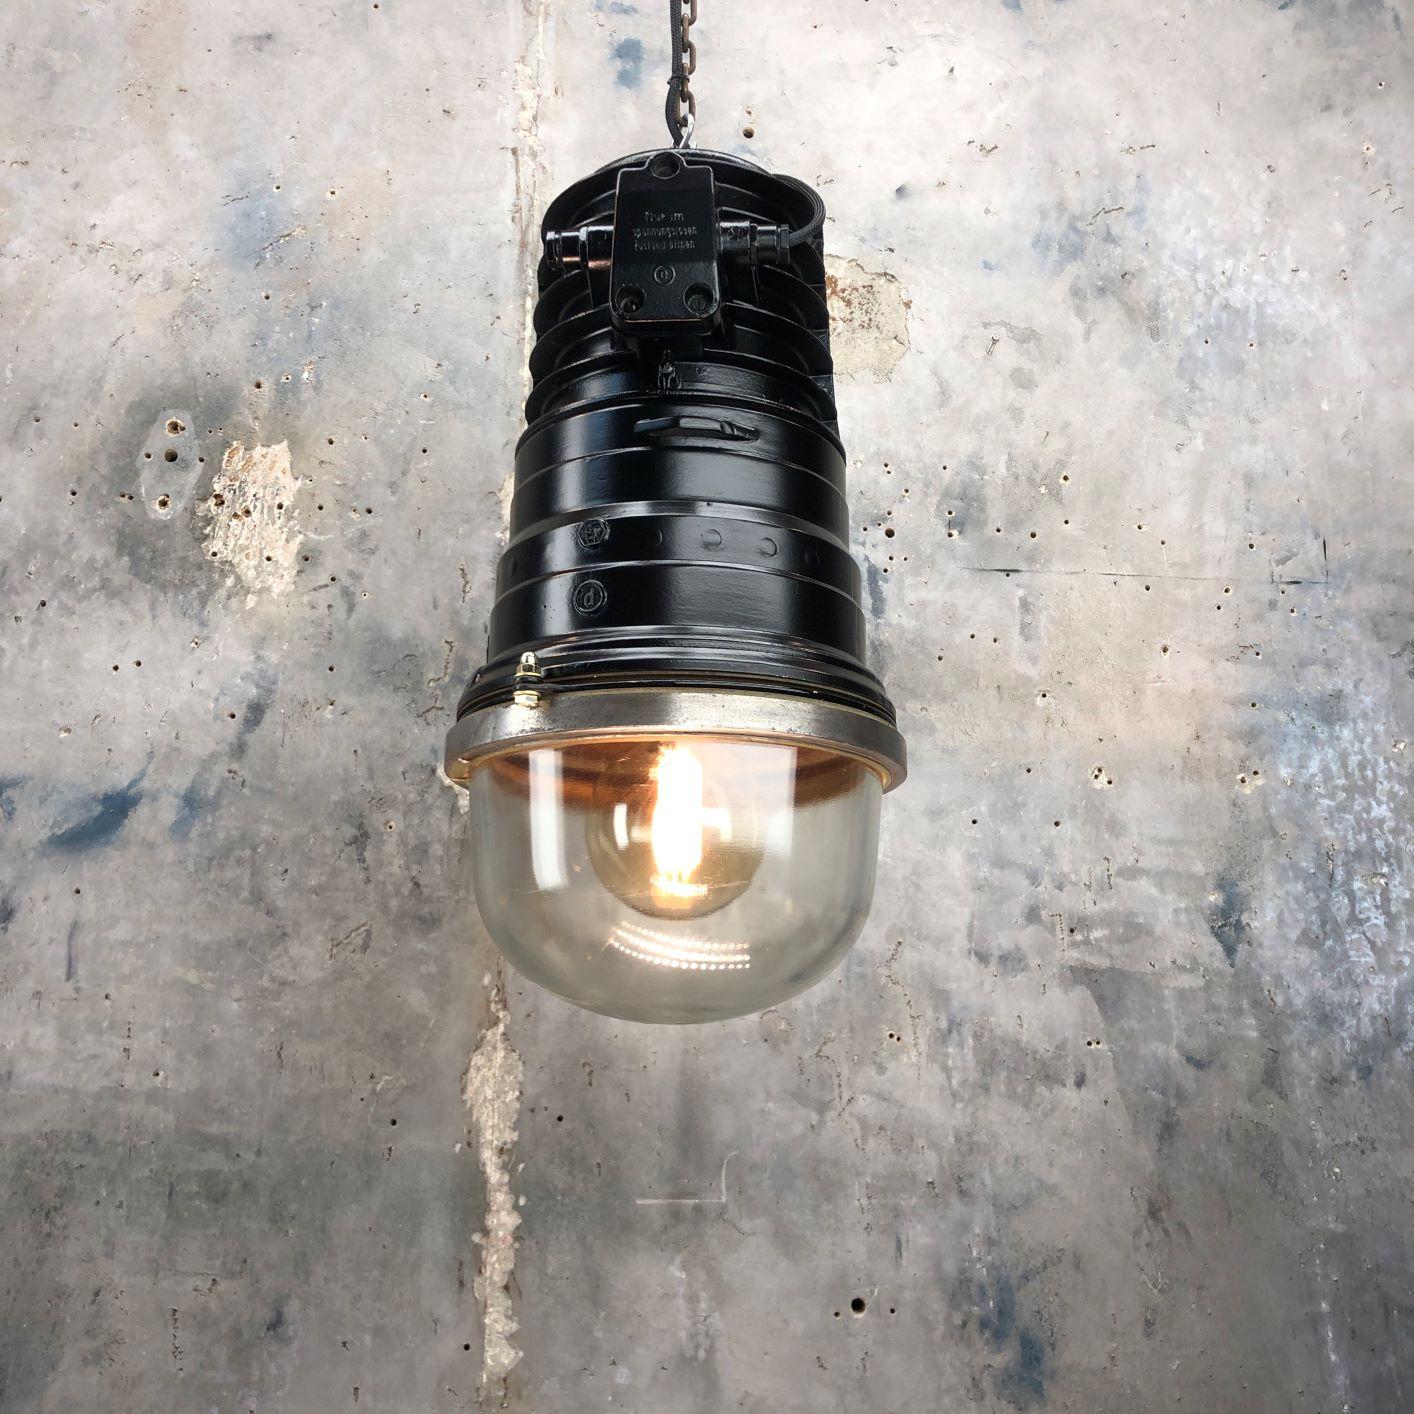 Une grande suspension industrielle vintage en fonte d'aluminium antidéflagrante de EOW, équipée d'une ampoule LED à économie d'énergie et peinte en noir satiné. 

Récupéré et restauré professionnellement par Loomlight au Royaume-Uni pour les